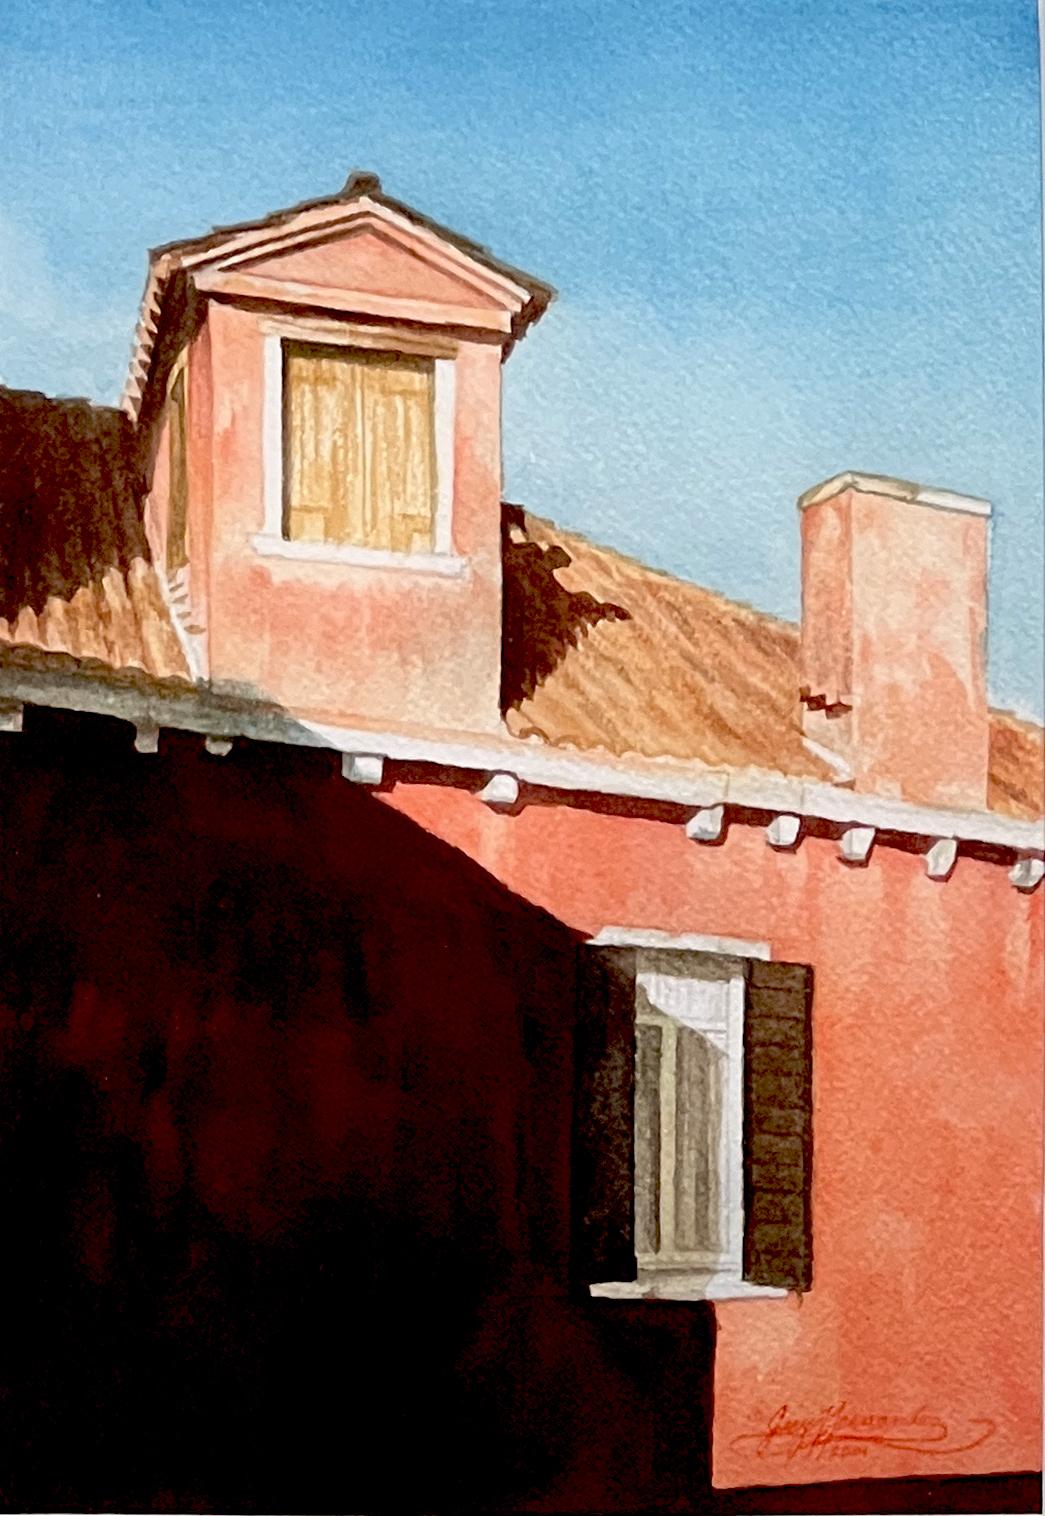 Ansicht aus dem Hotel Campiello, Venedig, Italien, Realismus, Aquarell, 10 x 7, (Amerikanischer Realismus), Painting, von Gary Hernandez